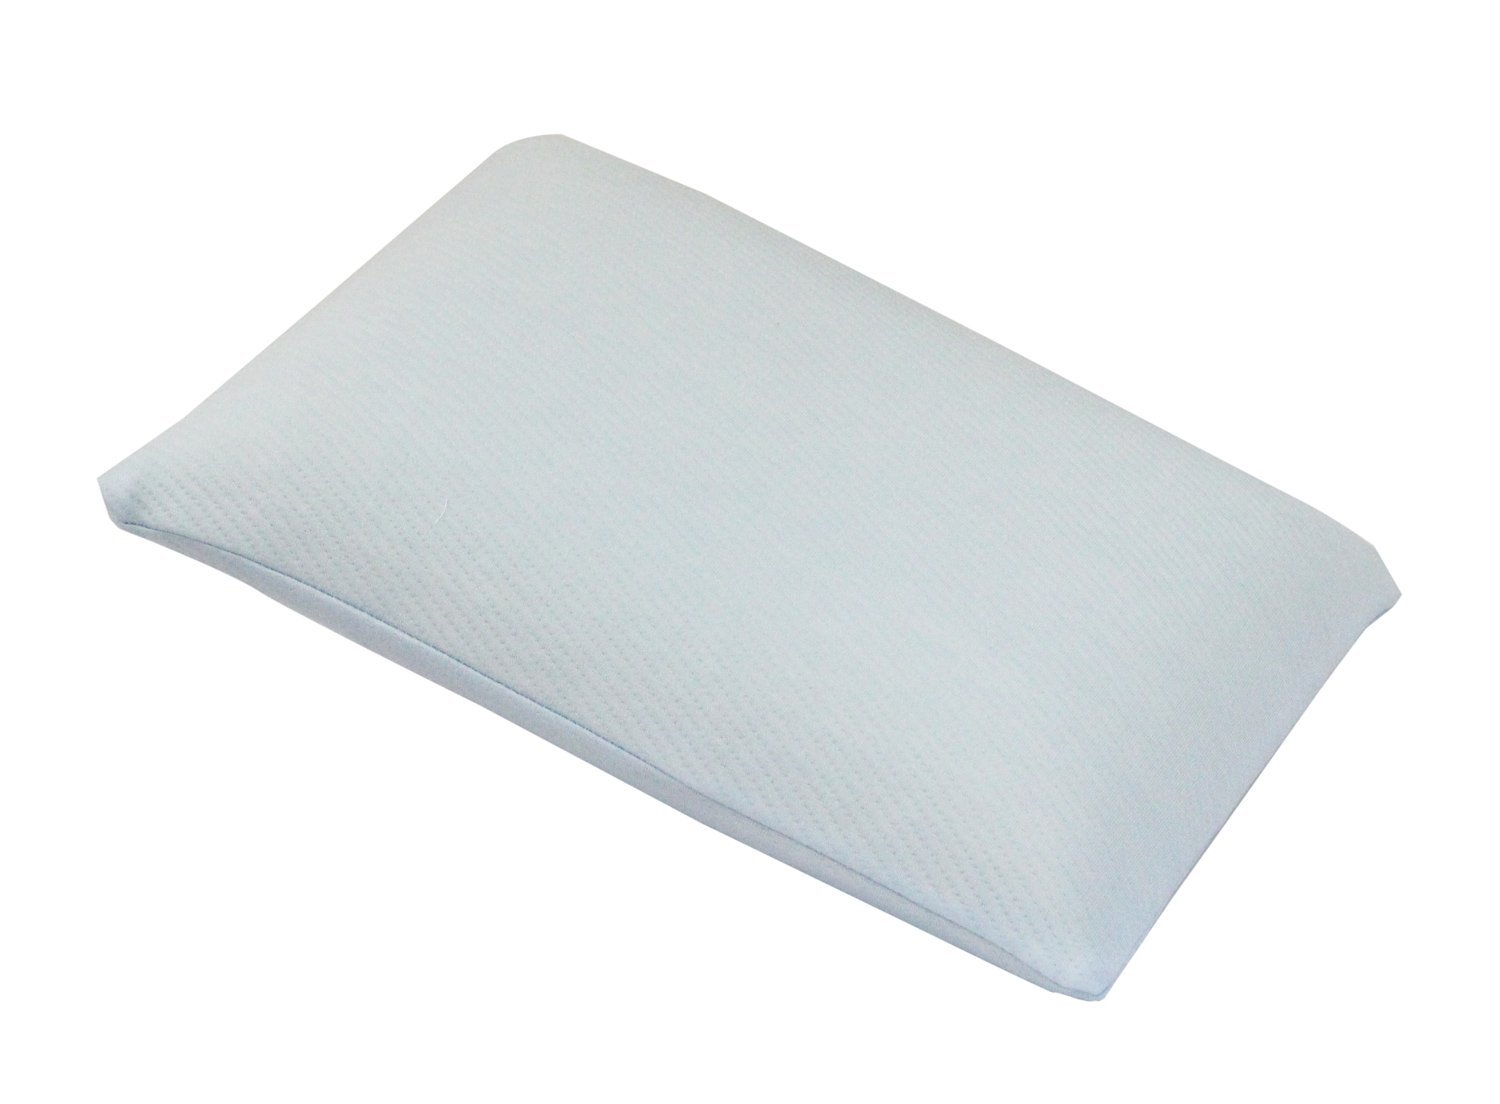 ジュニア用 低反発枕(カバー付) ブルー